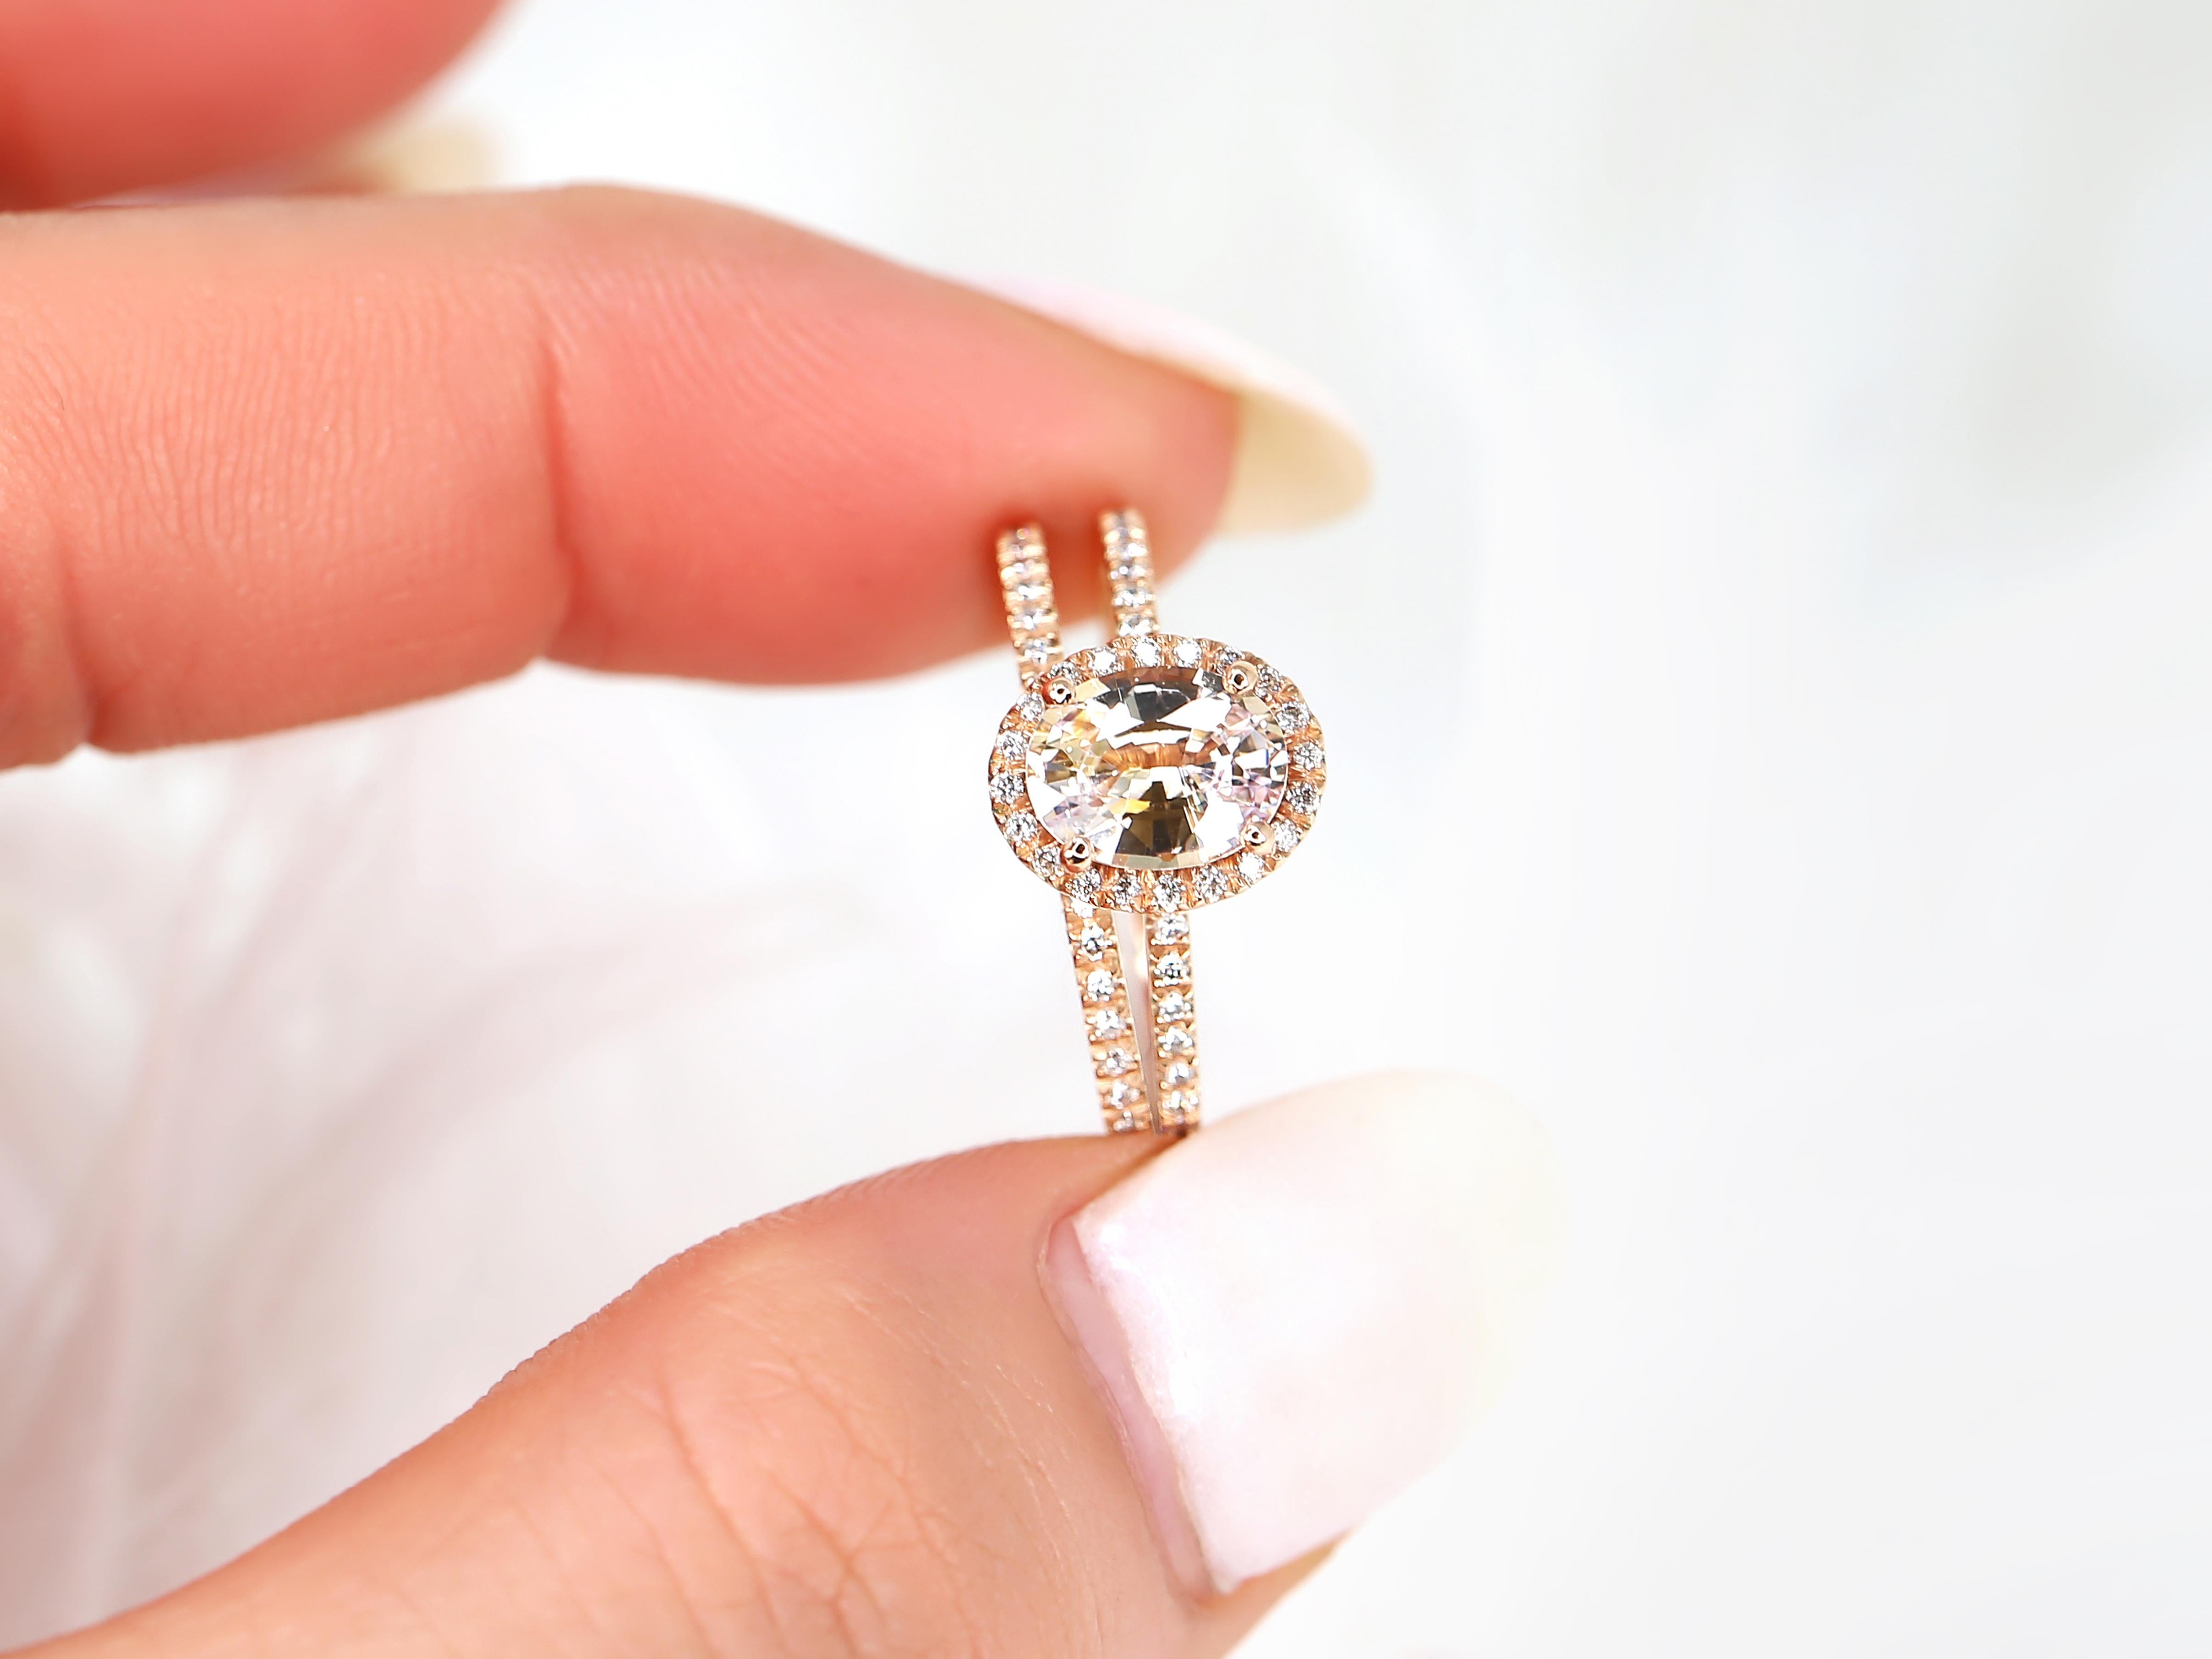 Rayonnez d'élégance et de romantisme avec notre parure nuptiale ovale en saphir pêche champagne. La pierre centrale, de forme ovale, est entourée d'un halo de diamants et complétée par des diamants pavés classiques.

Détail de l'anneau (des anneaux)